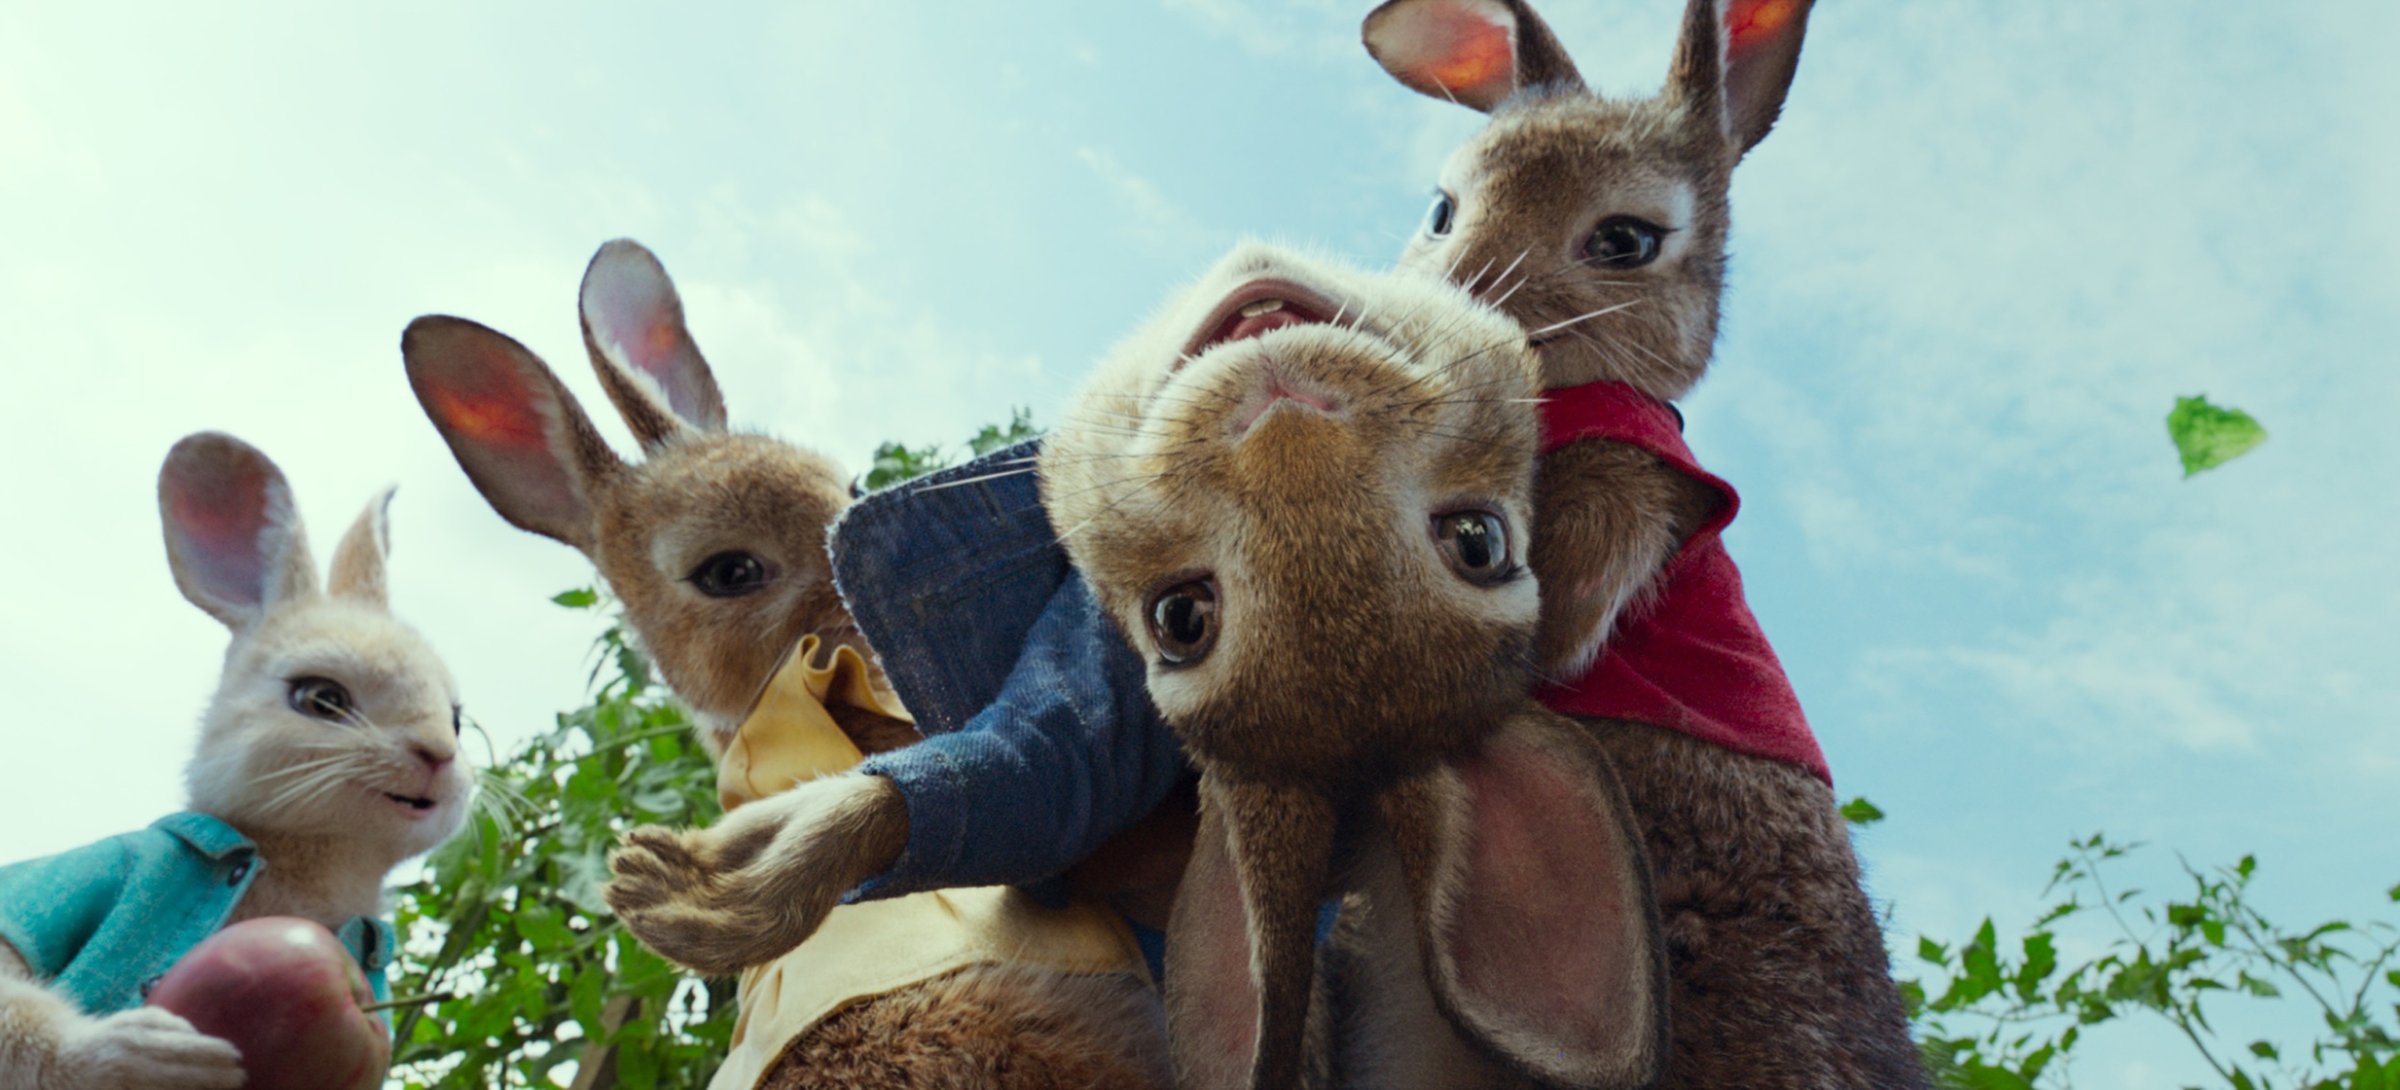 Кролик Питер (Peter Rabbit, 2018) смотреть онлайн в хорошем HD качестве,  отзывы, кадры из фильма, актеры - Кино Mail.ru